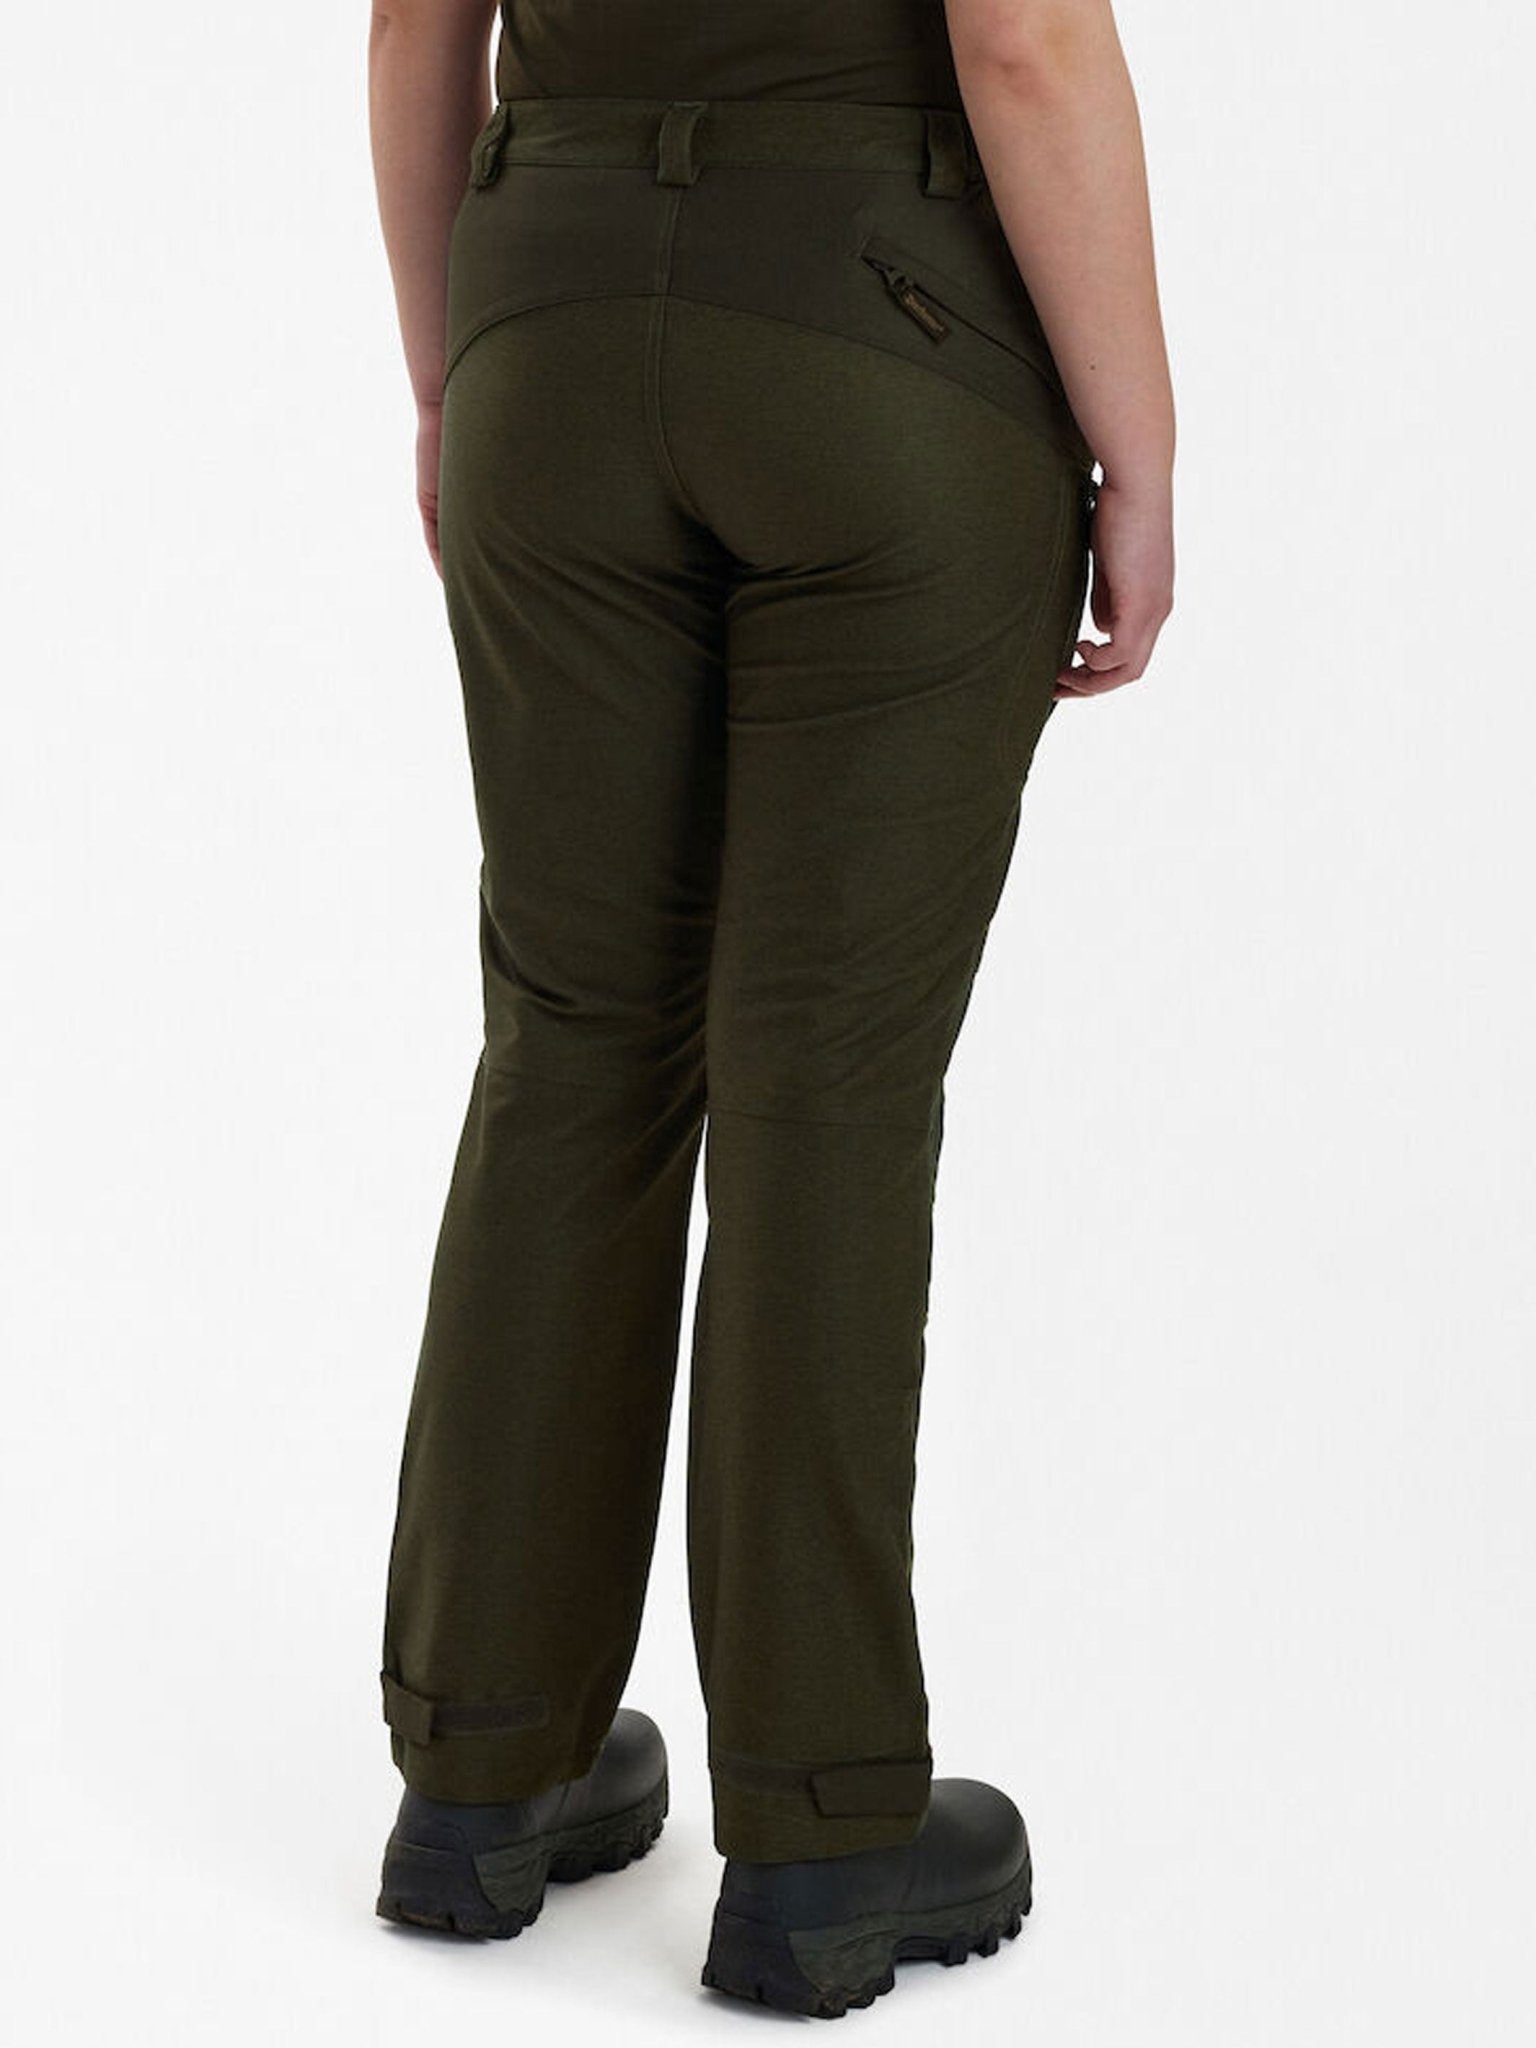 Deerhunter Deerhunter - Chasse Ladies Waterproof Trousers - Windproof, Breathable, & tape seams Trousers & Jeans